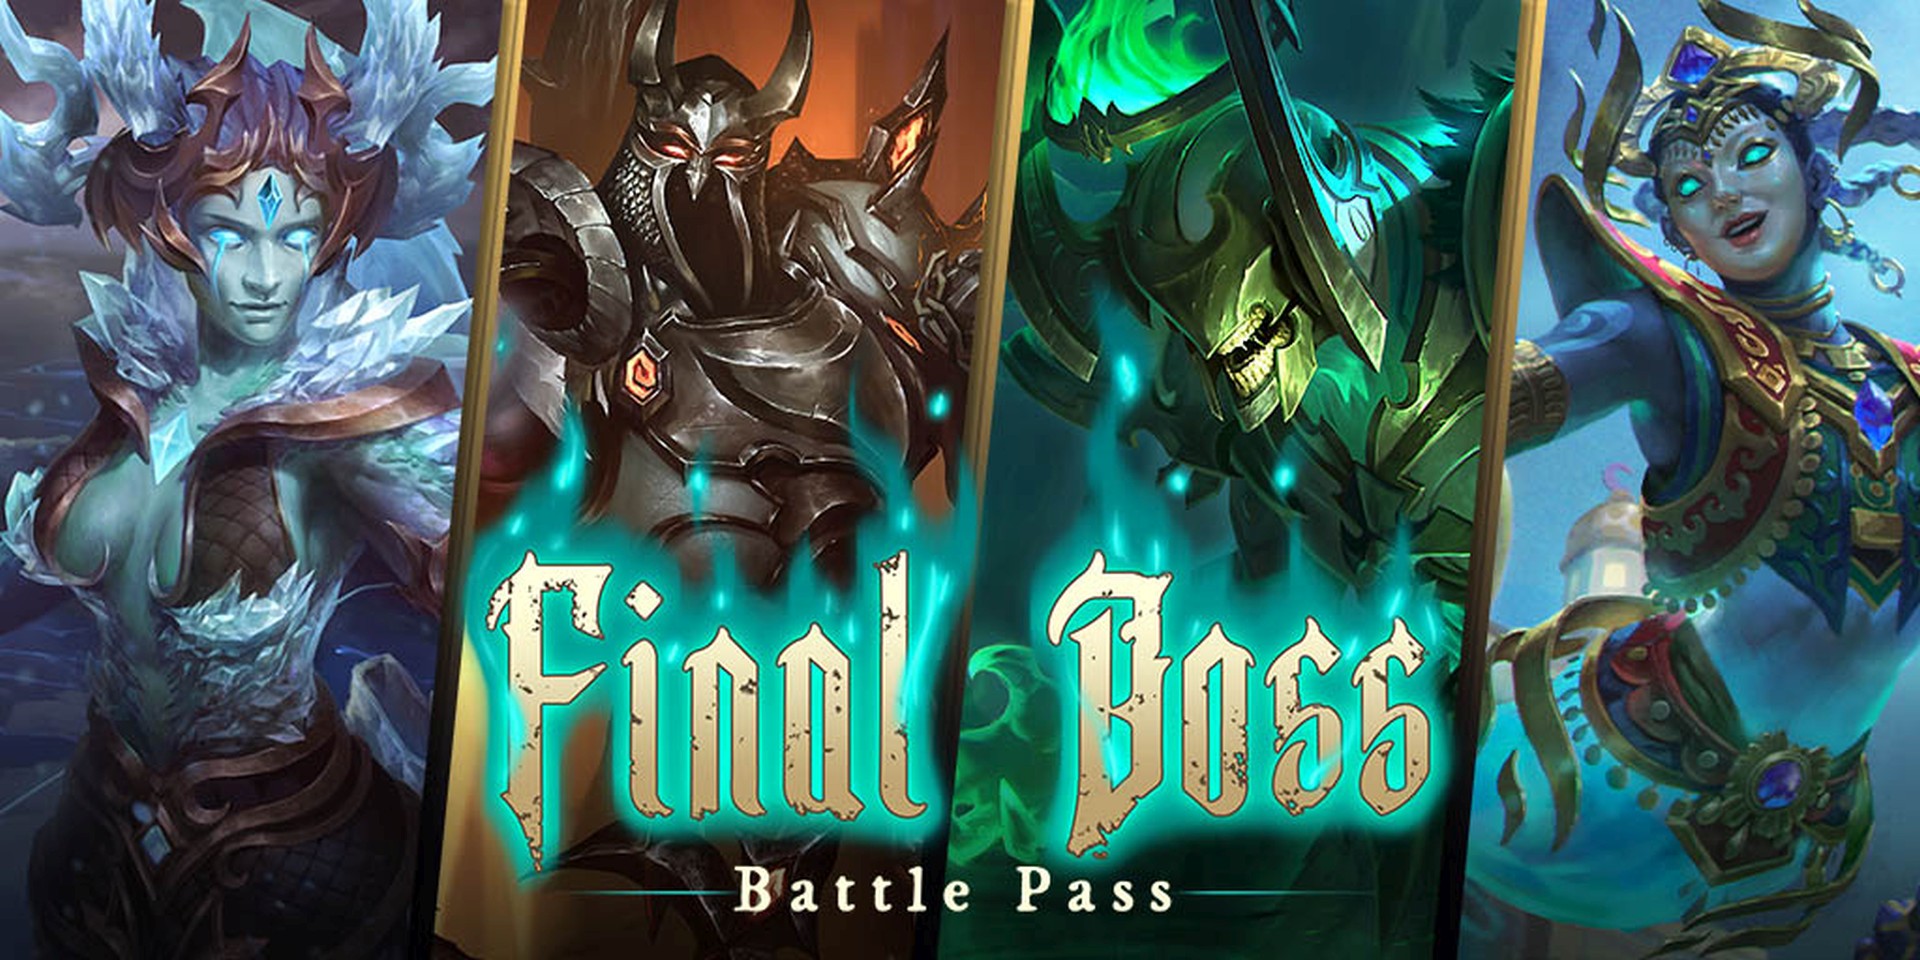 Smite Final Boss Update Features New Battle Pass